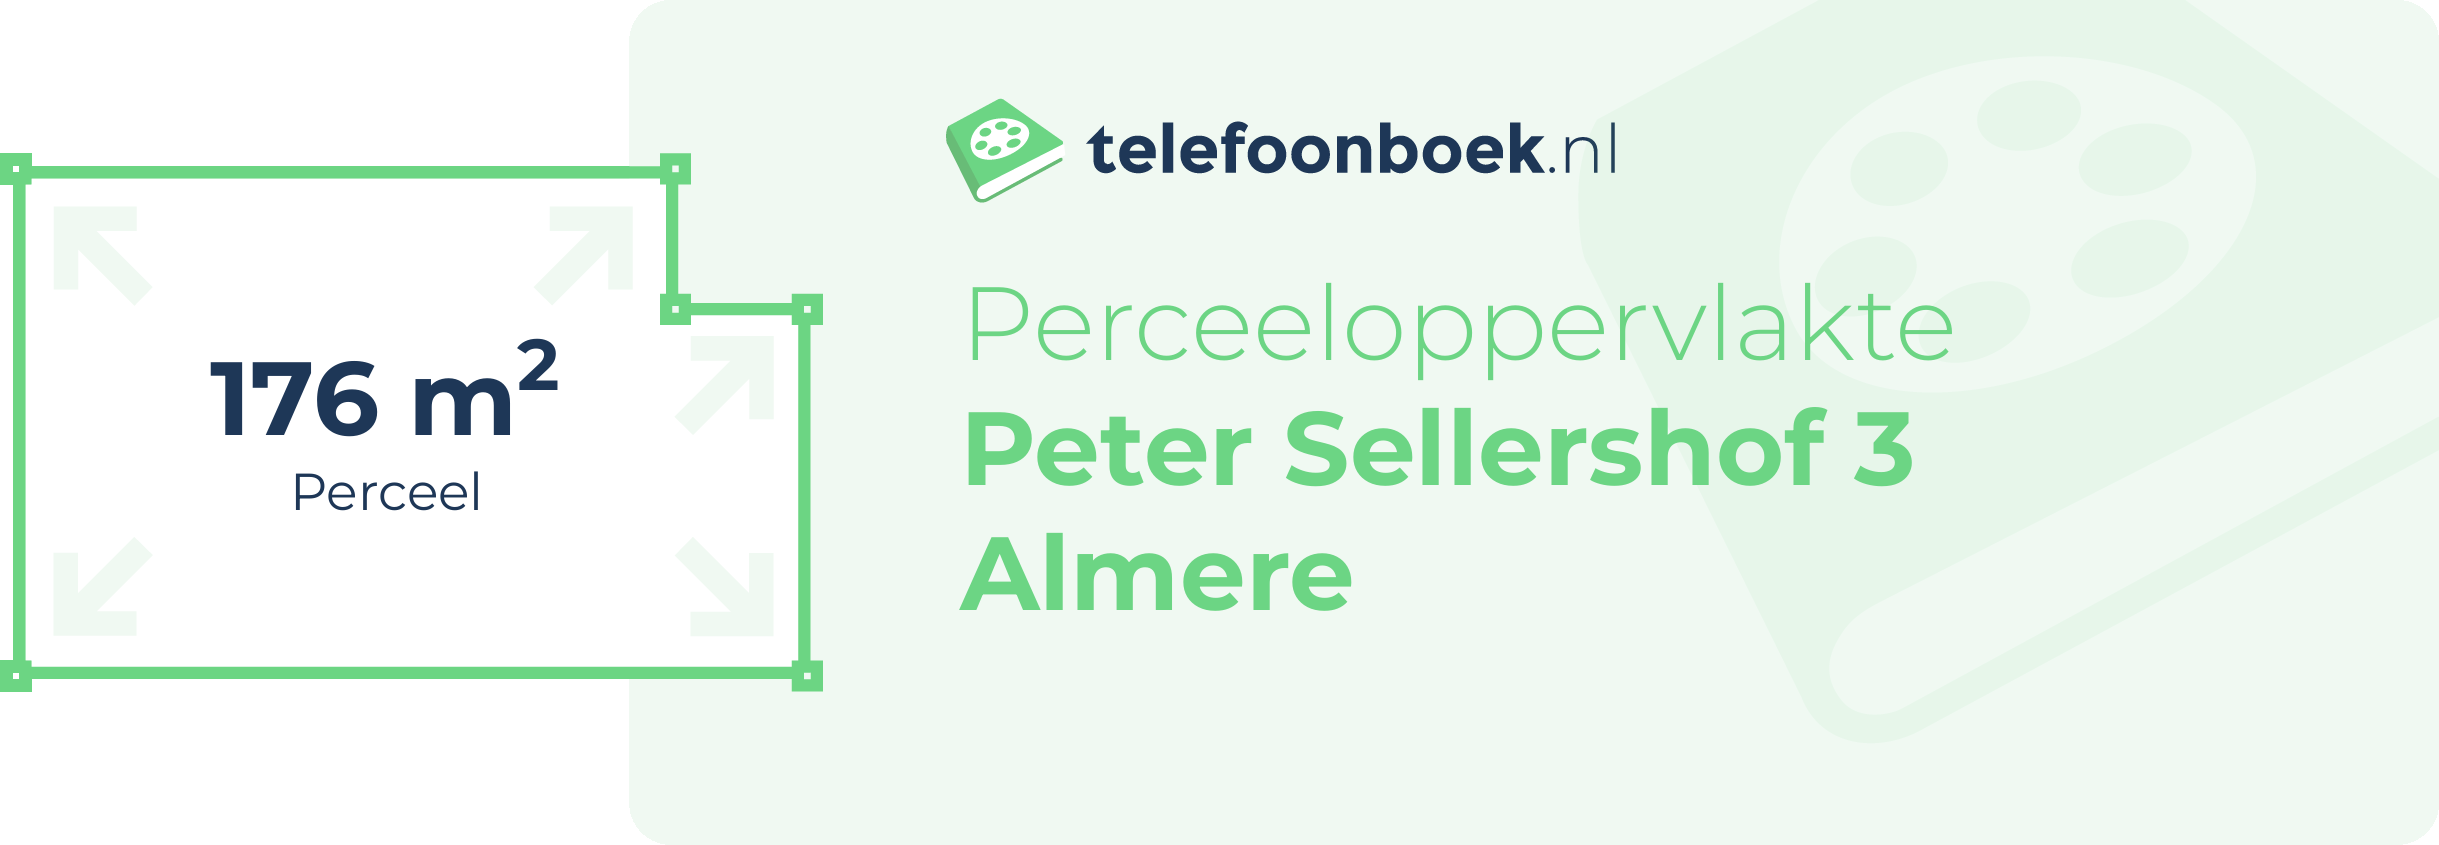 Perceeloppervlakte Peter Sellershof 3 Almere